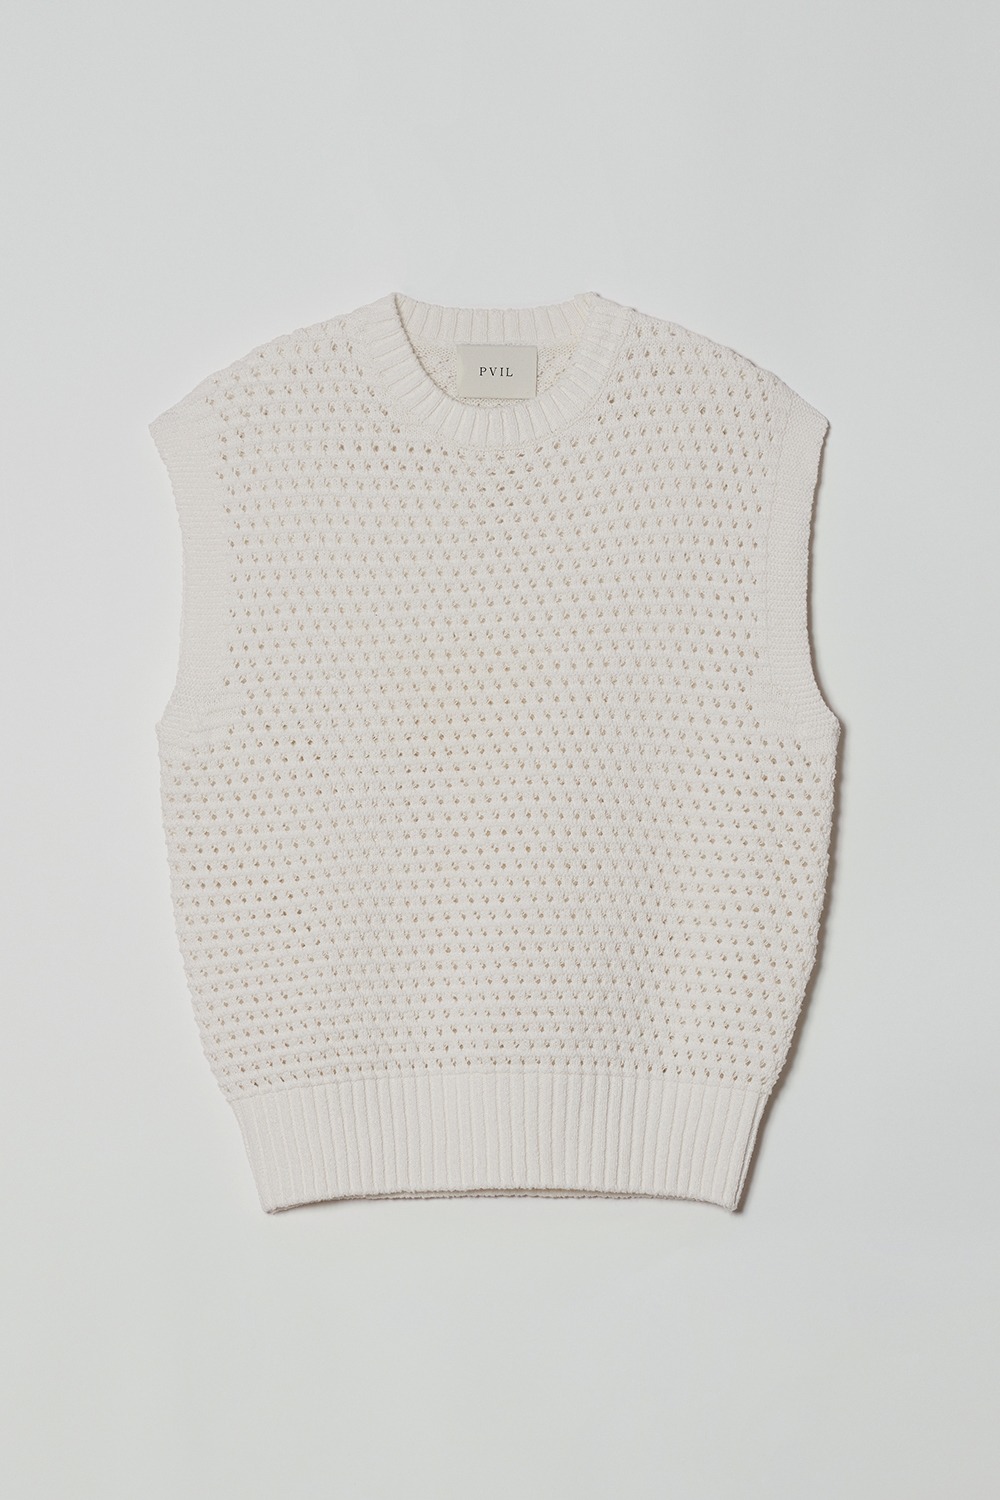 PVIL Bee Vest(Cream)